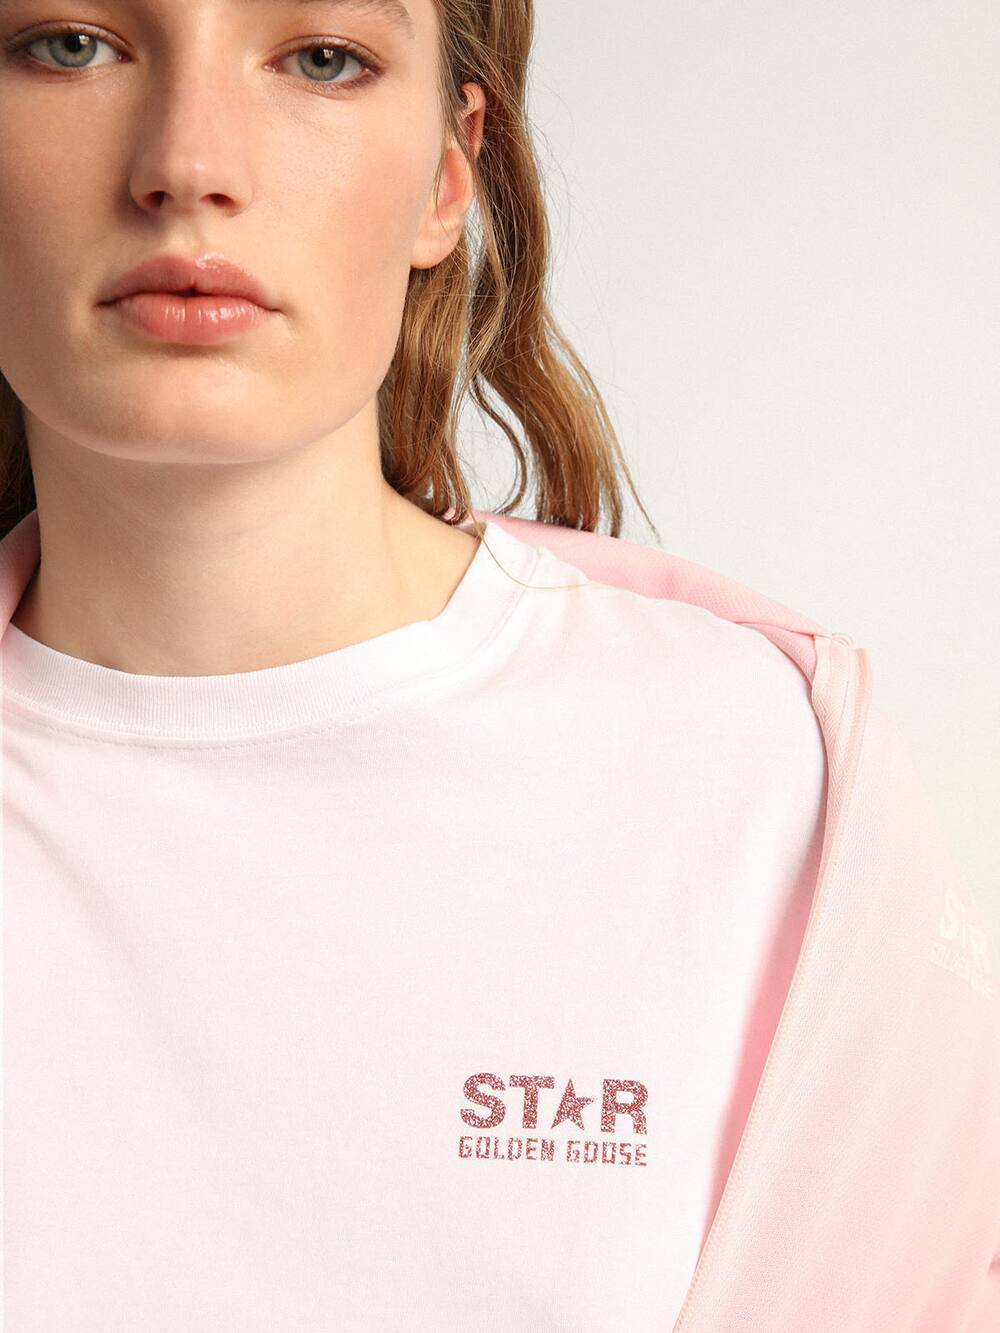 Golden Goose - T-shirt femme blanc avec logo et étoile à paillettes roses in 